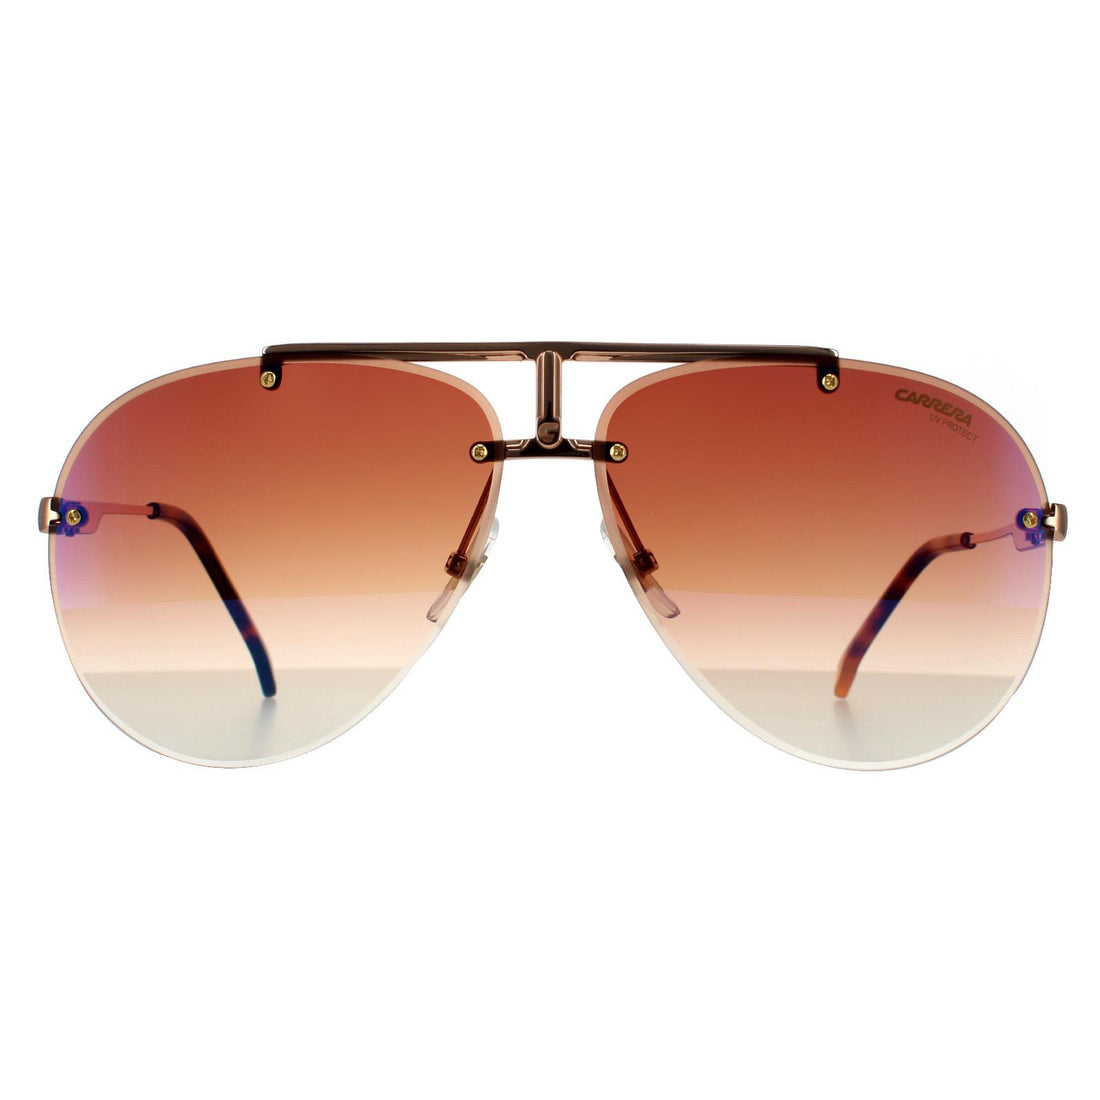 Carrera 1032/S Sunglasses Gold Copper / Brown Gradient Blue